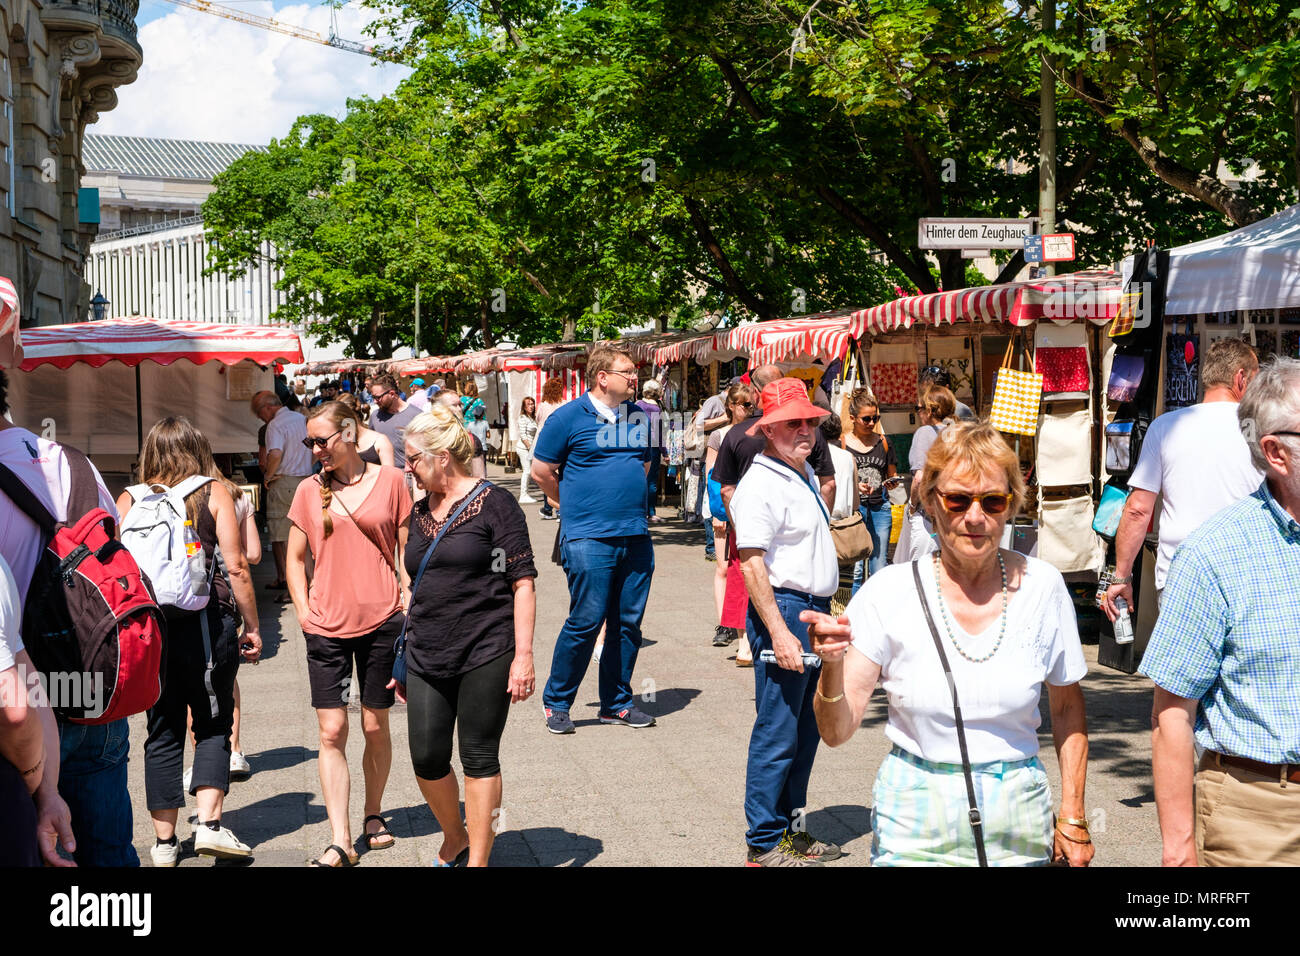 Berlino, Germania - maggio 2018: persone al mercato d'arte / Mercato delle pulci nella Zeughaus vicino all'Isola dei musei in una giornata di sole a Berlino, Germania Foto Stock